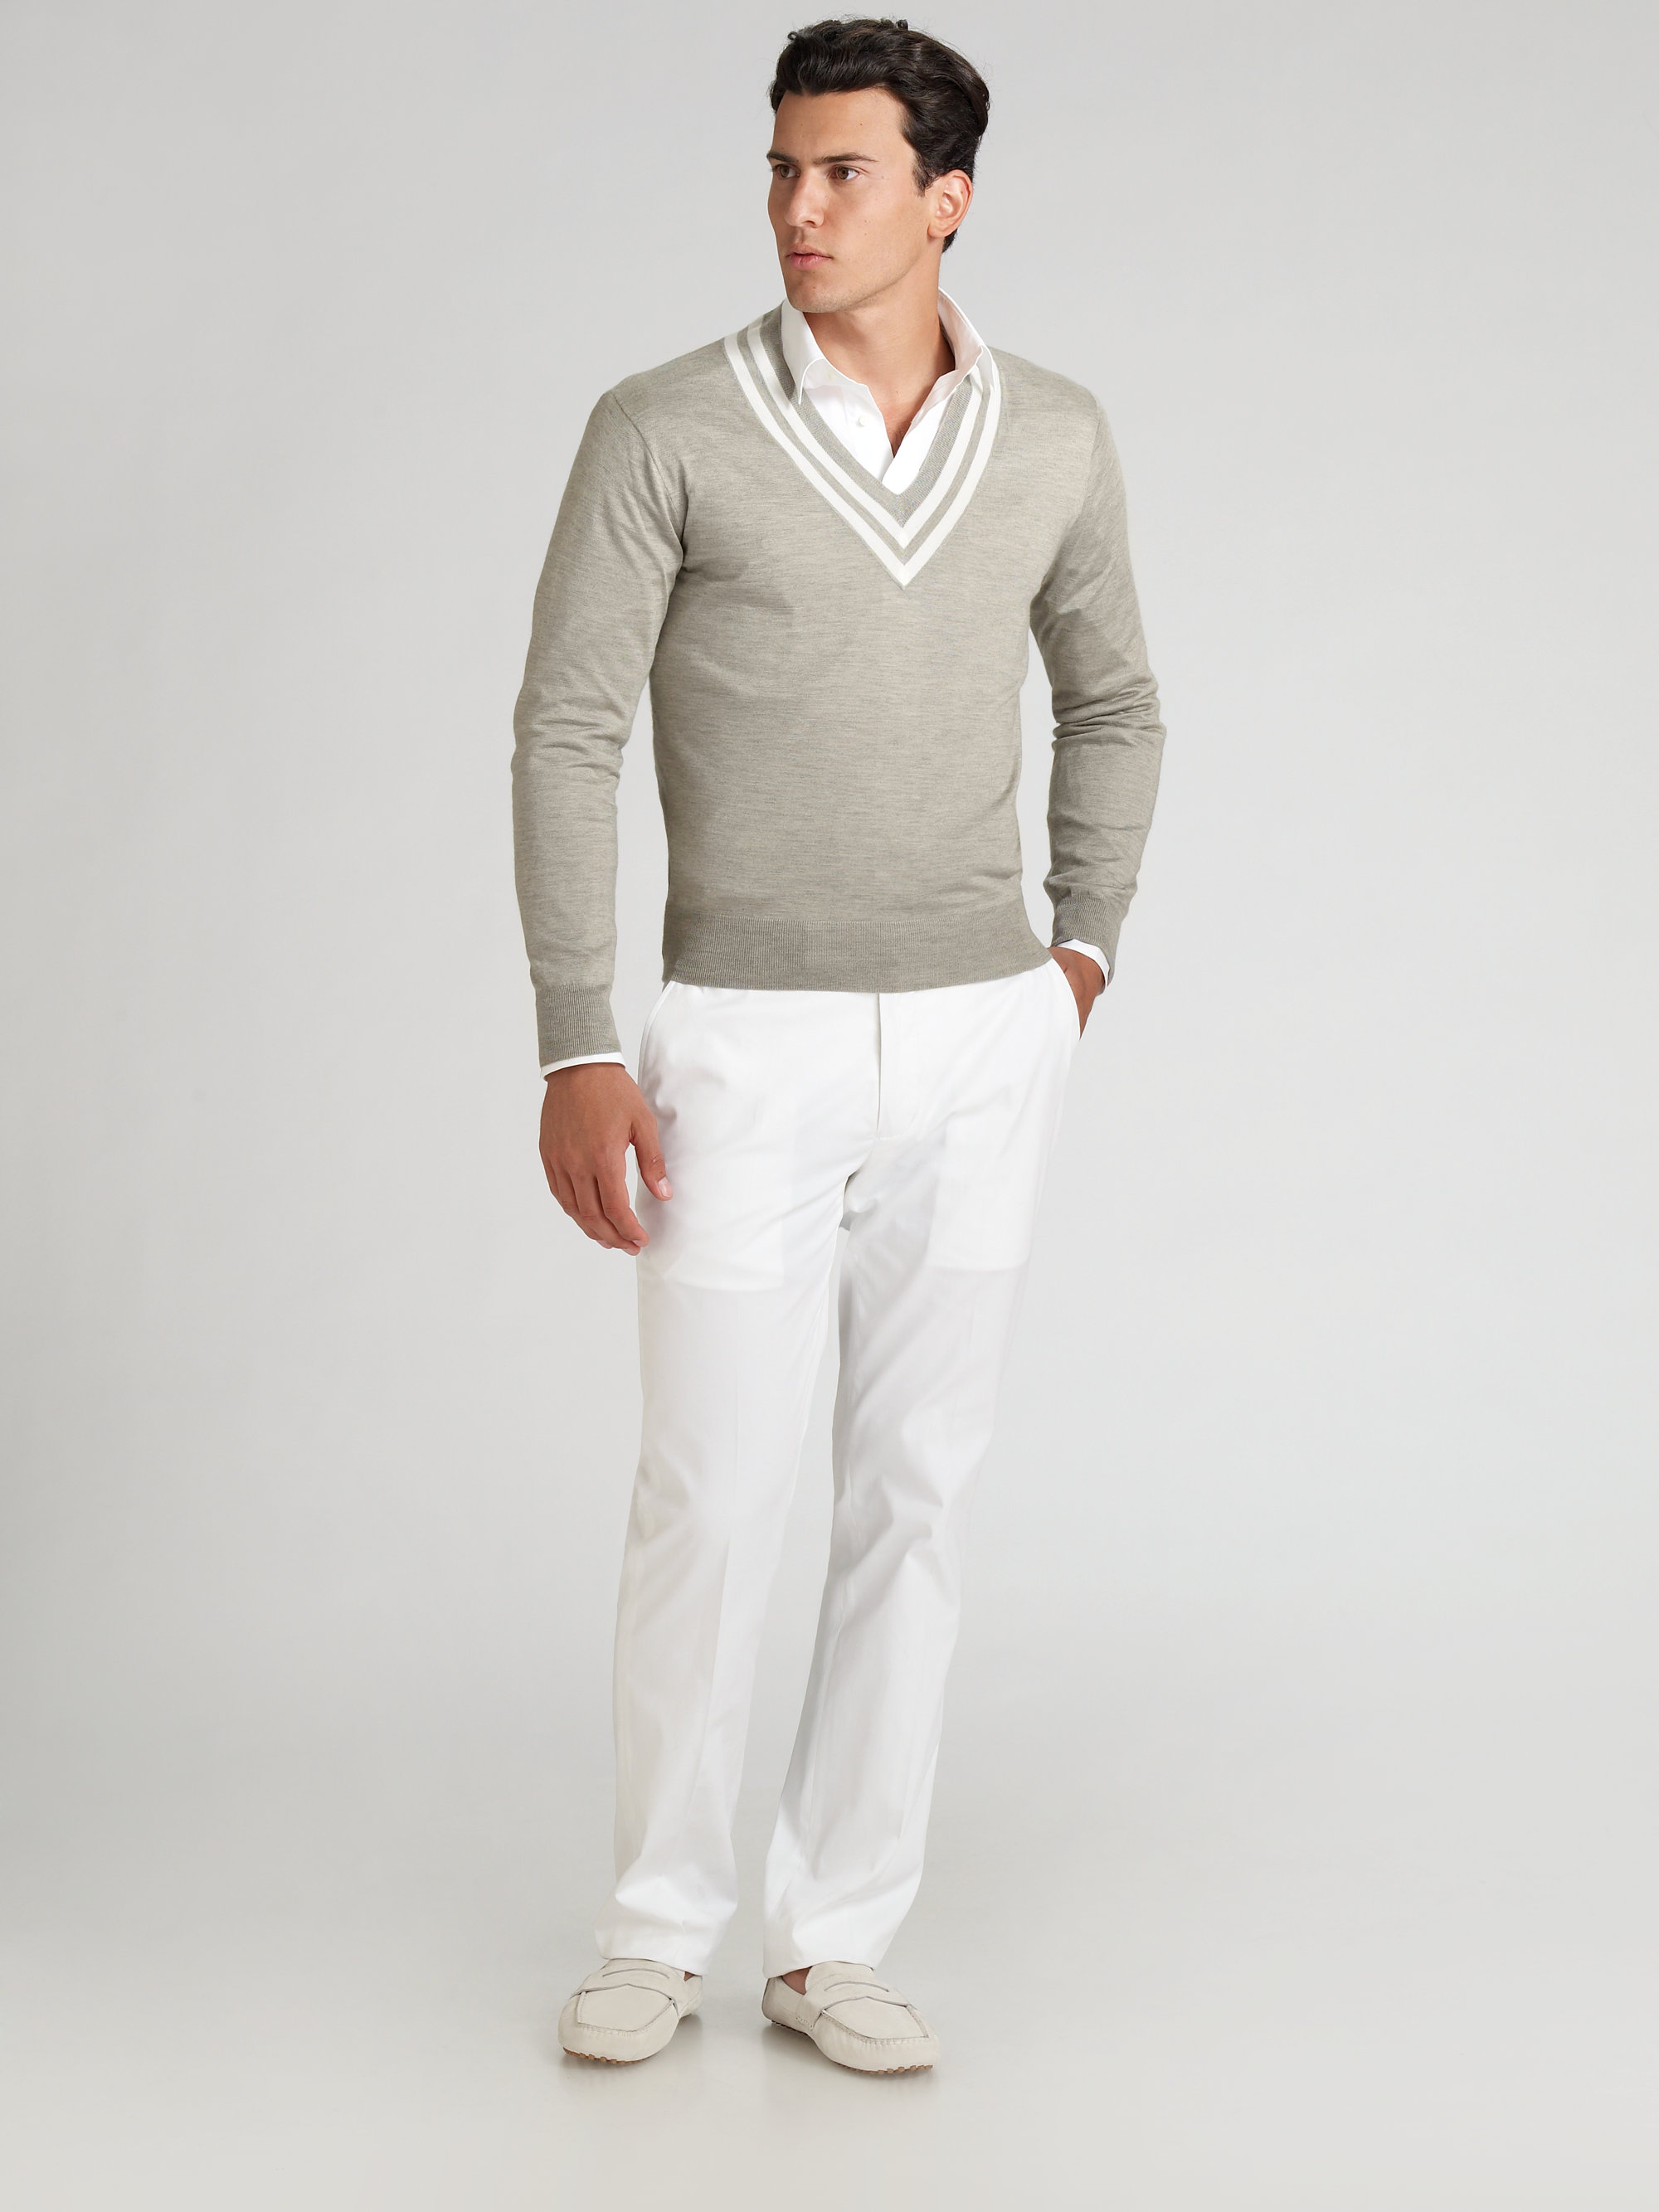 Lyst - Ralph lauren black label Silkcashmere Cricket Sweater in Gray ...